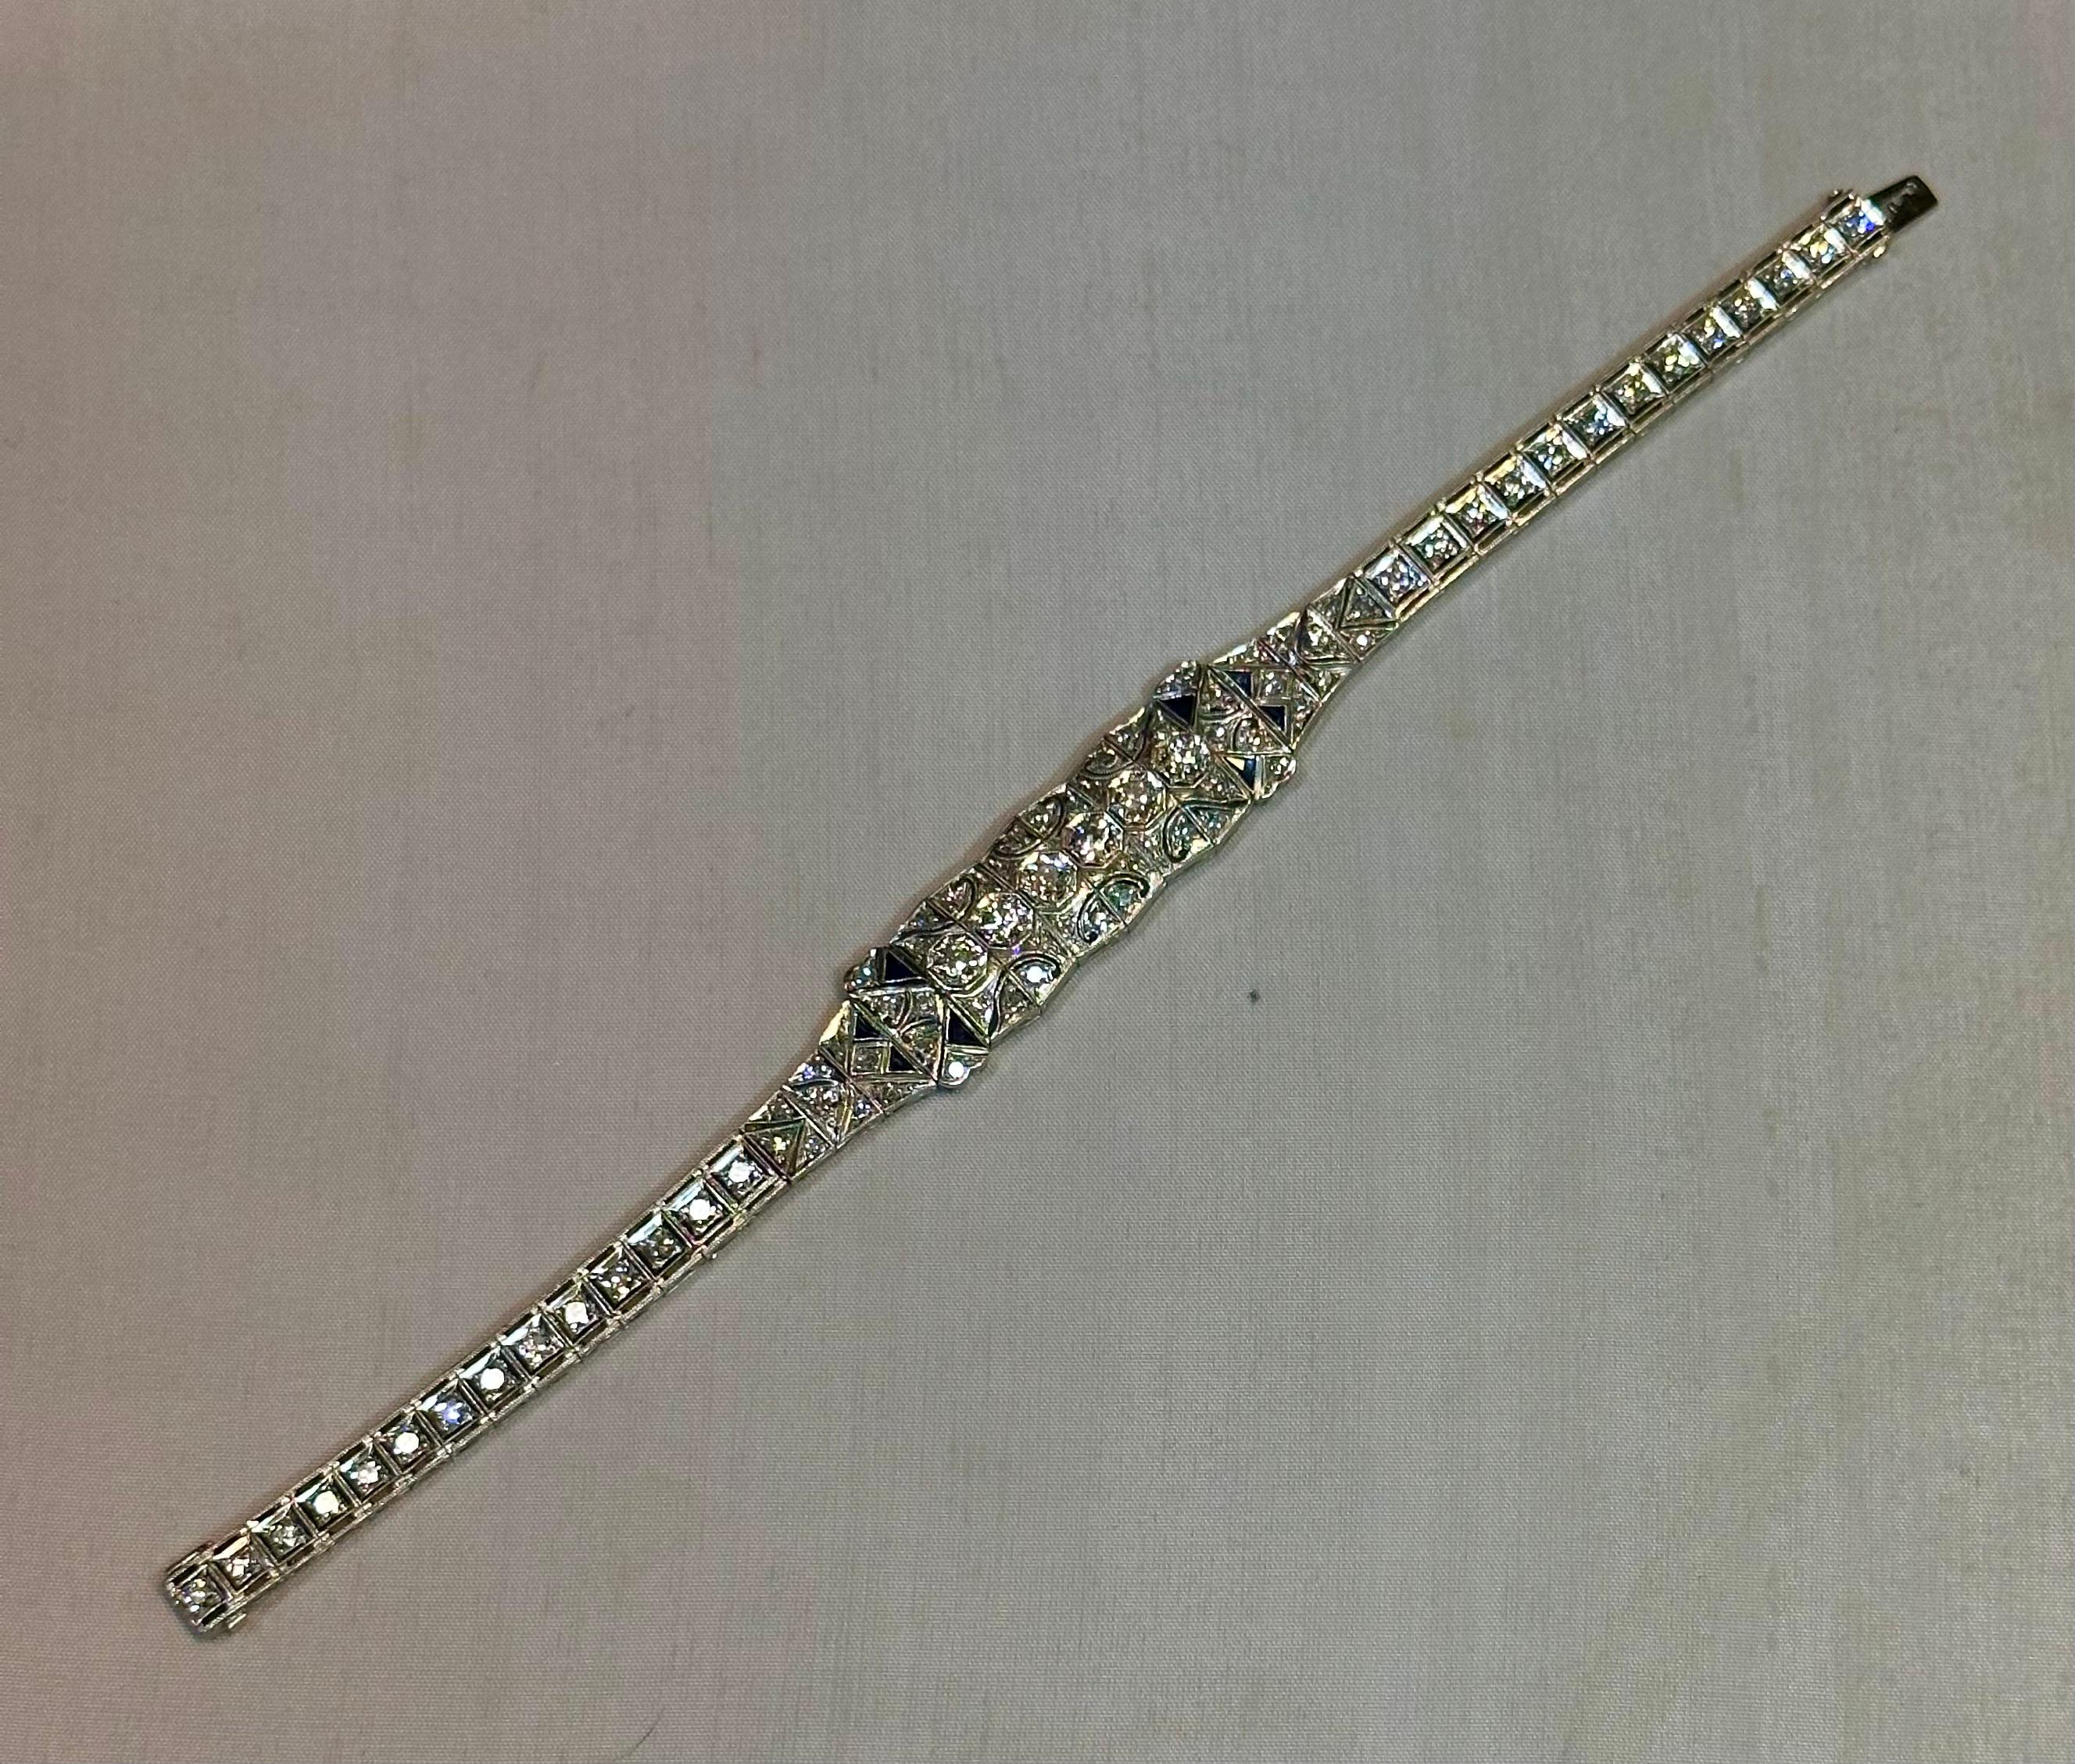 Ce bracelet vintage du début du 20e siècle de l'époque édouardienne (1902 - 1918), orné de diamants, est élaboré en platine et en pierres précieuses multiples. Le centre du bracelet comporte six panneaux centraux ornés de diamants ronds facettés